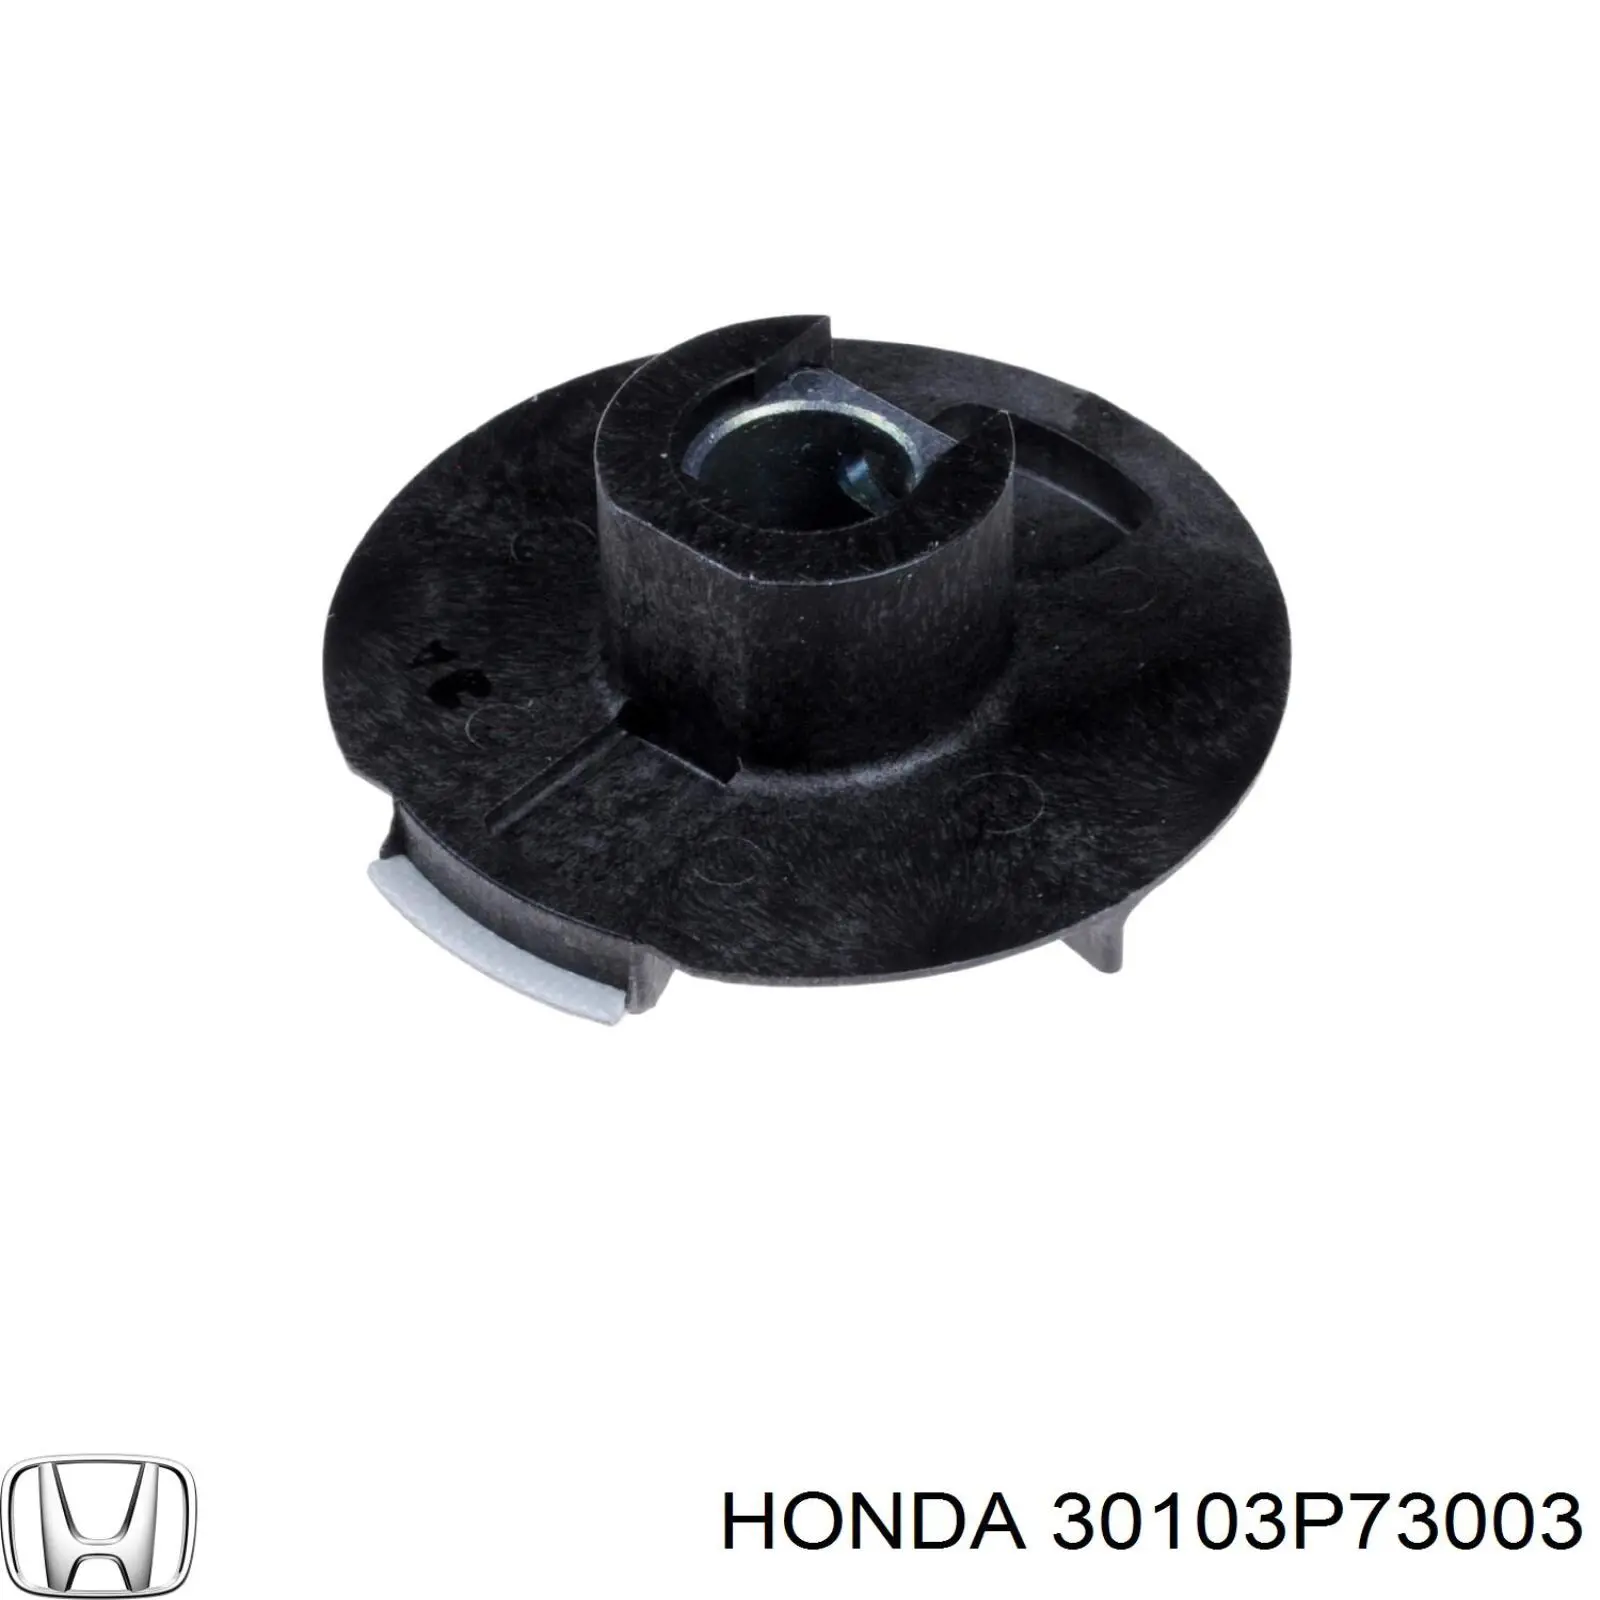 Бегунок (ротор) распределителя зажигания, трамблера Honda 30103P73003